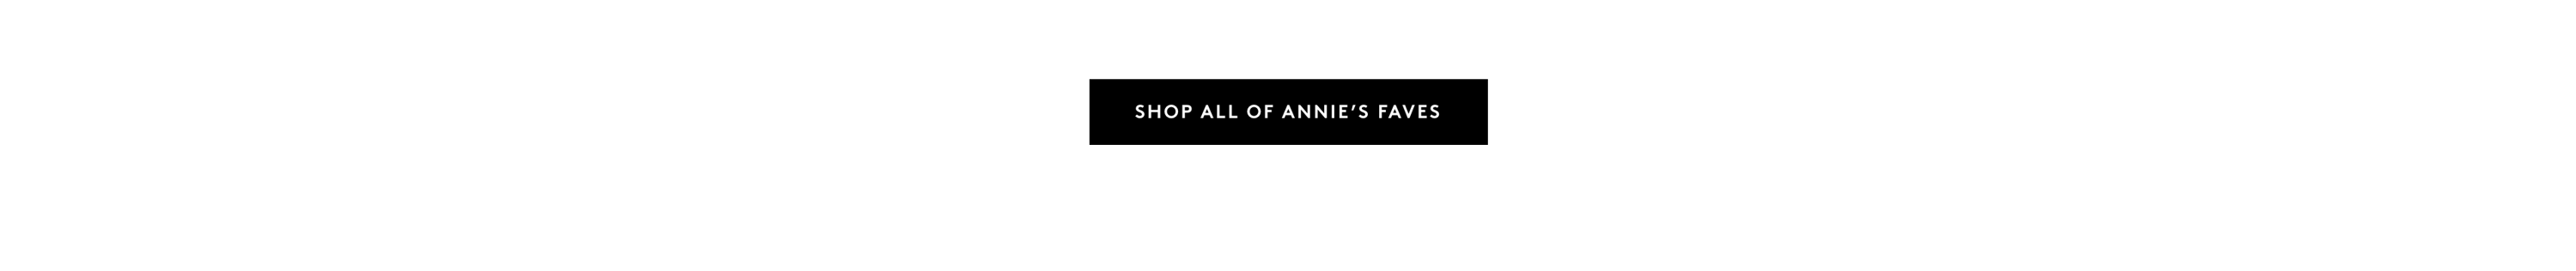 Shop Annie's Faves